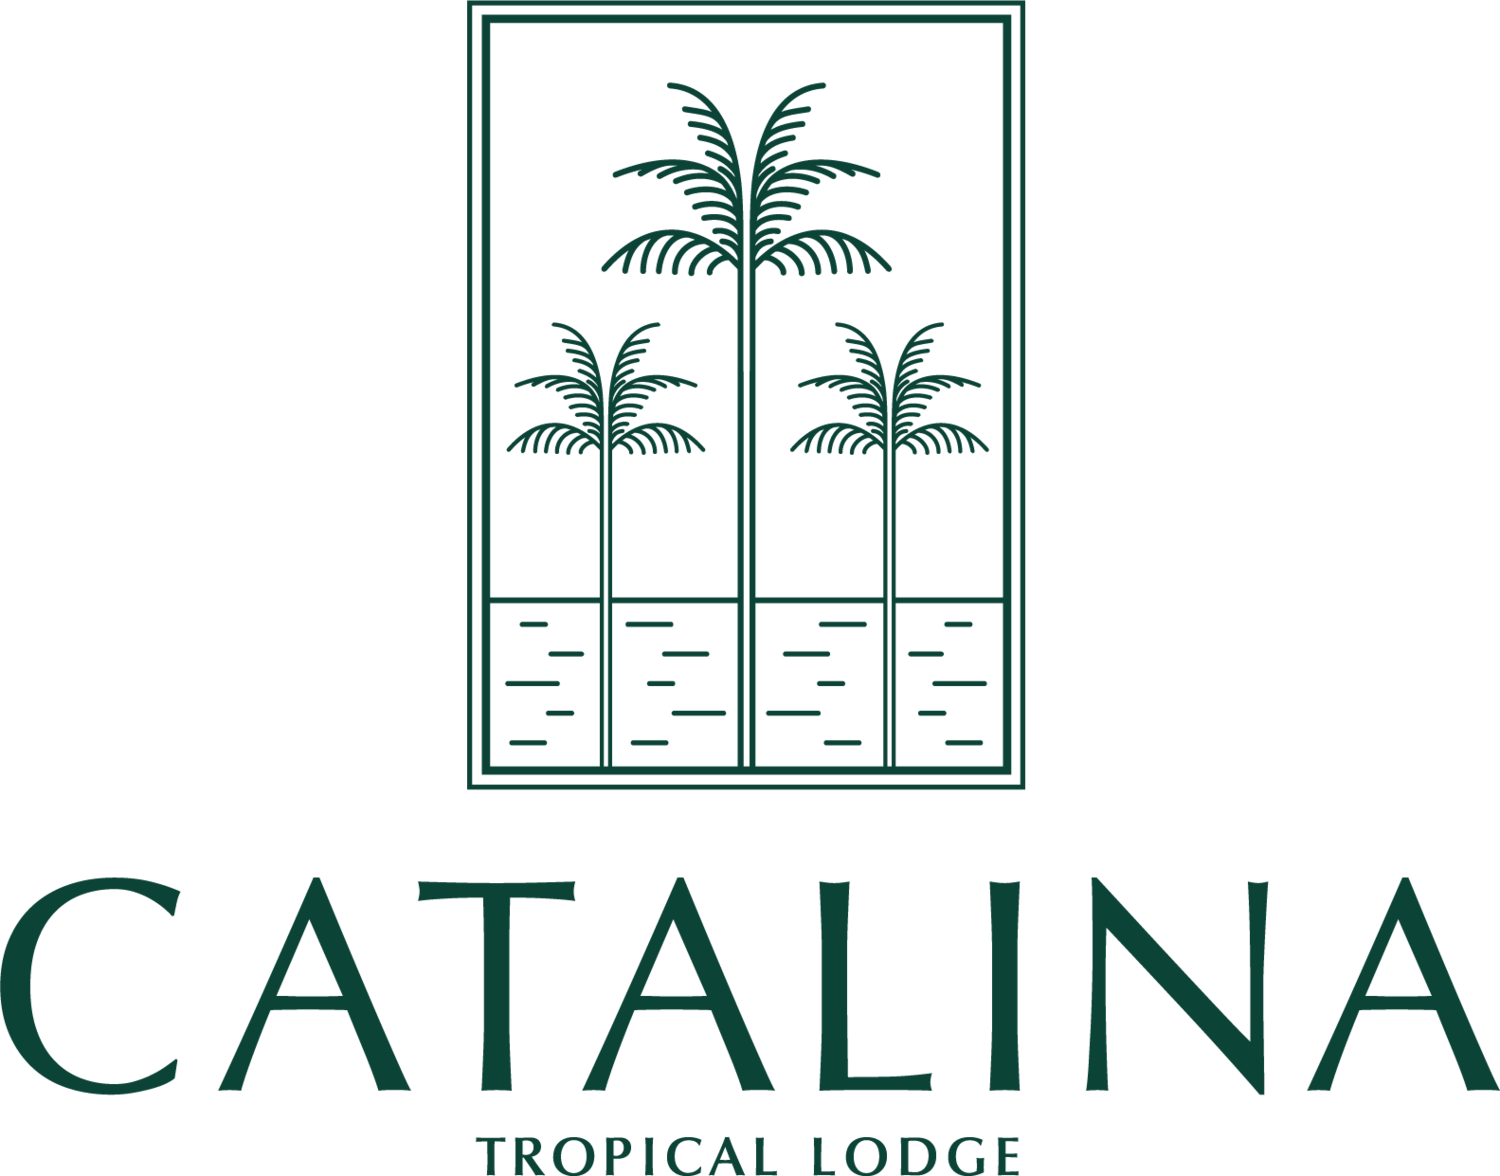 www.catalinatropicallodge.com